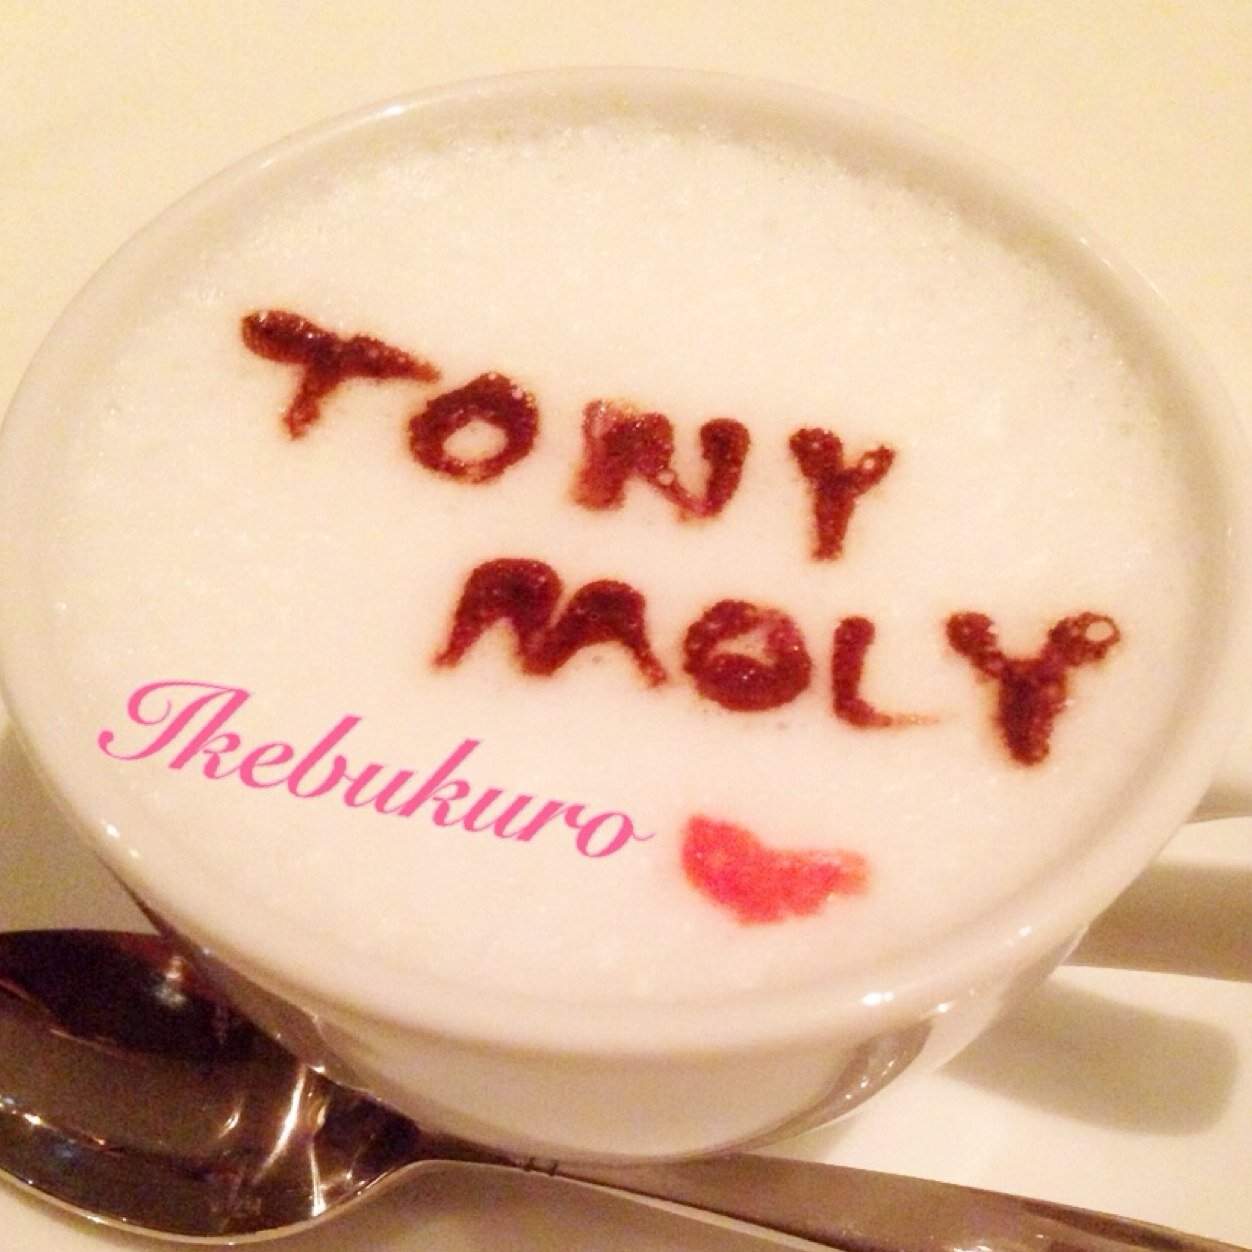 TONYMOLY池袋サンシャインシティアルパ店OFFICIALツイッターです！店舗のイベント情報・お得な情報などお伝えします^^FACEBOOK(http://t.co/tMKUbHS4Rh)もチェックしてくださいね♪
TONYMOLY at Ikebukuro sunshinecity:)